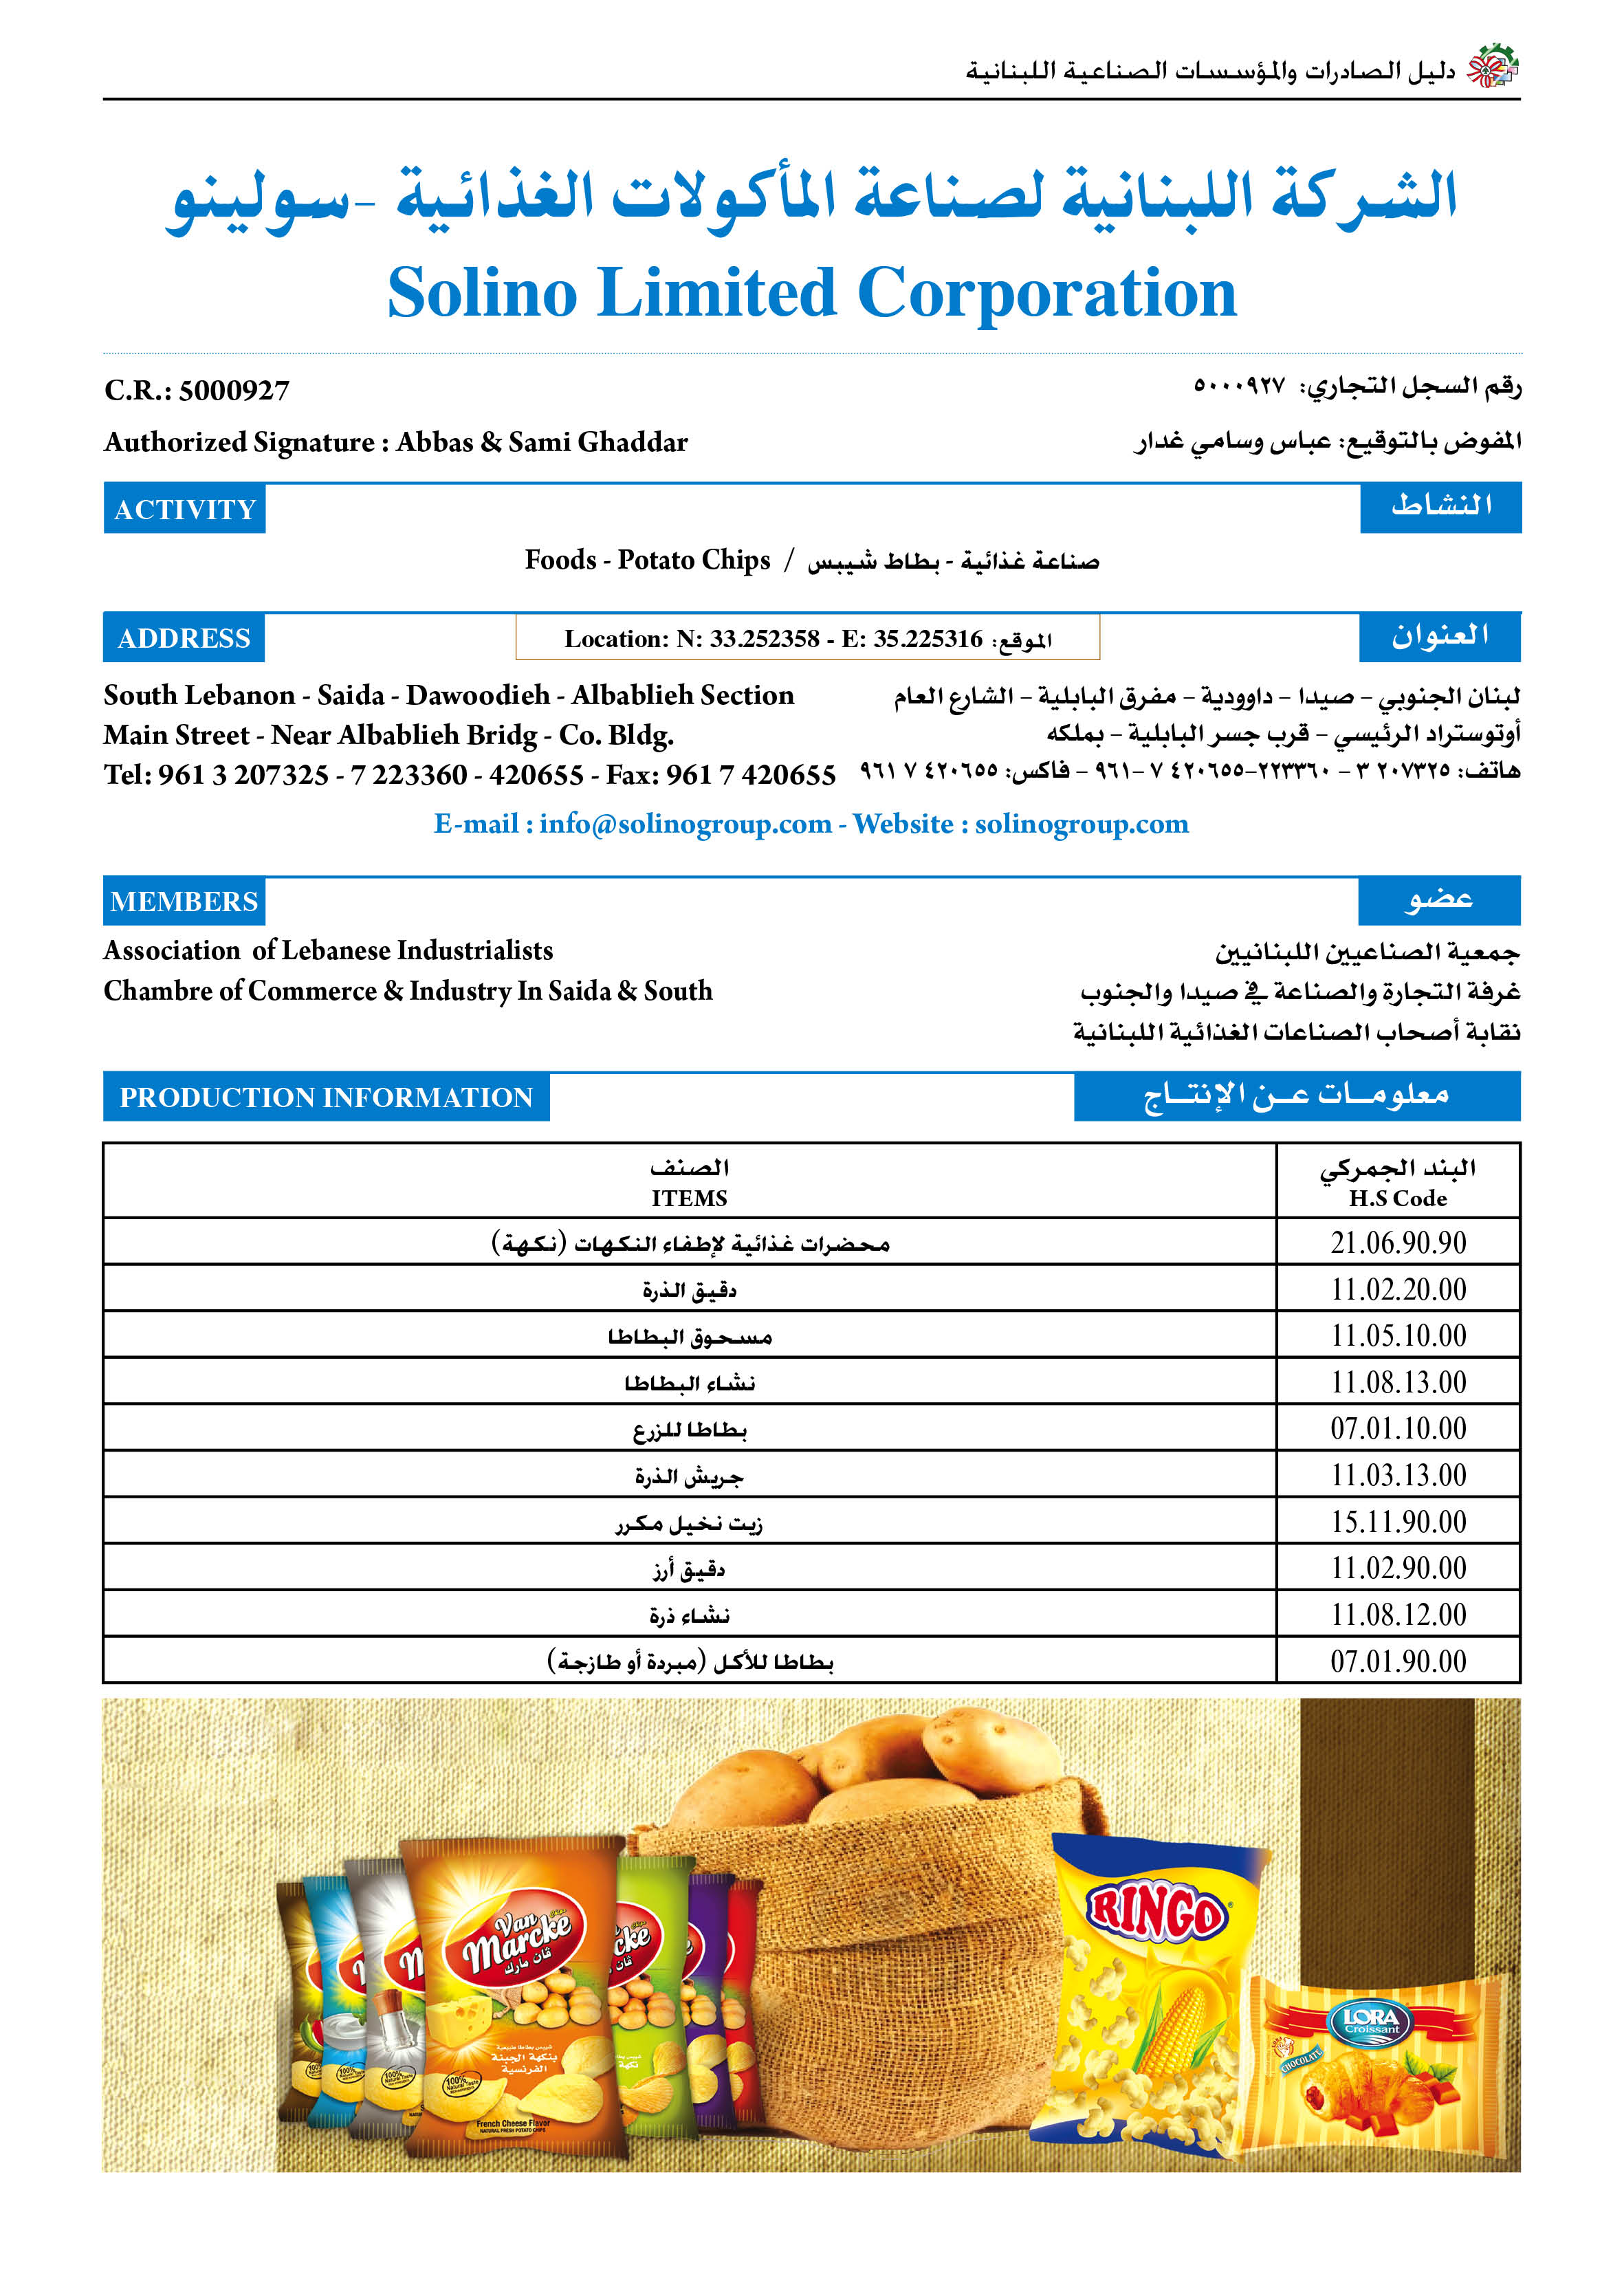 الشركة اللبنانية لصناعة الماكولات الغذائية-سولينو